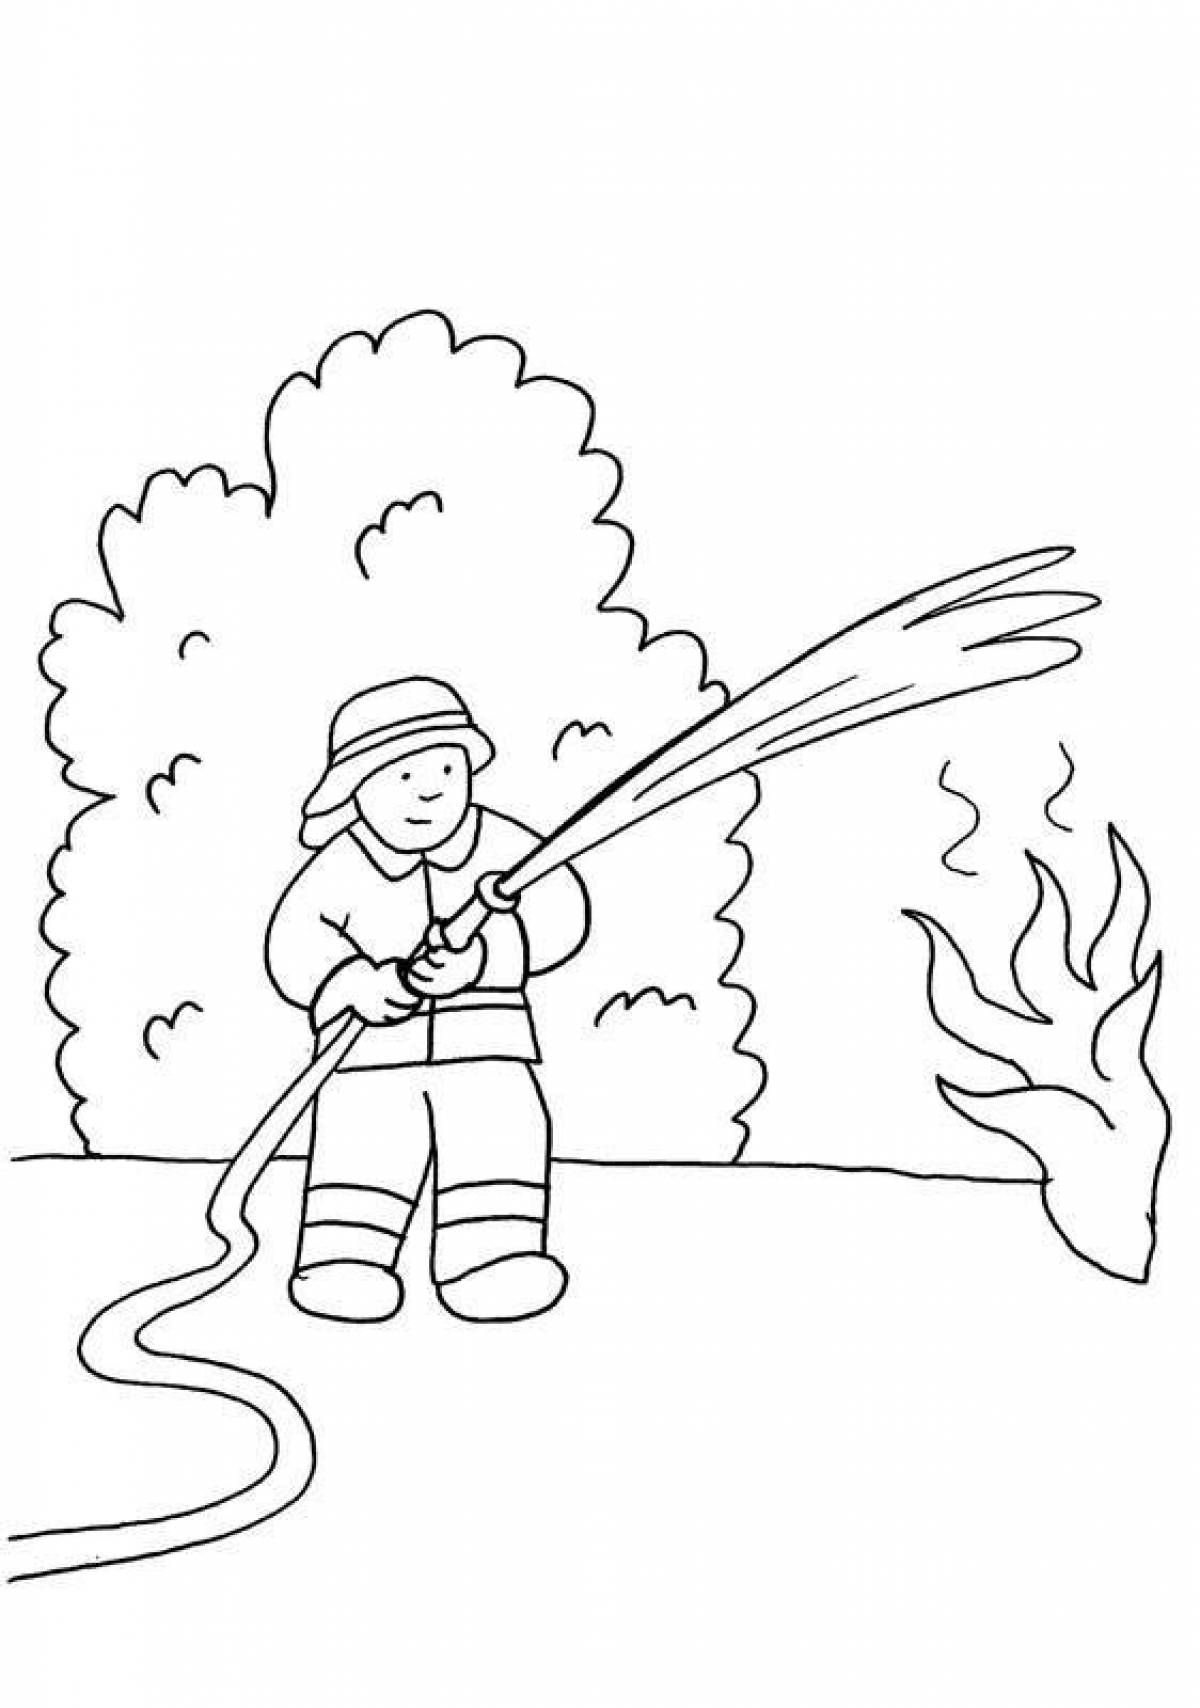 Креативная раскраска пожарного для детей